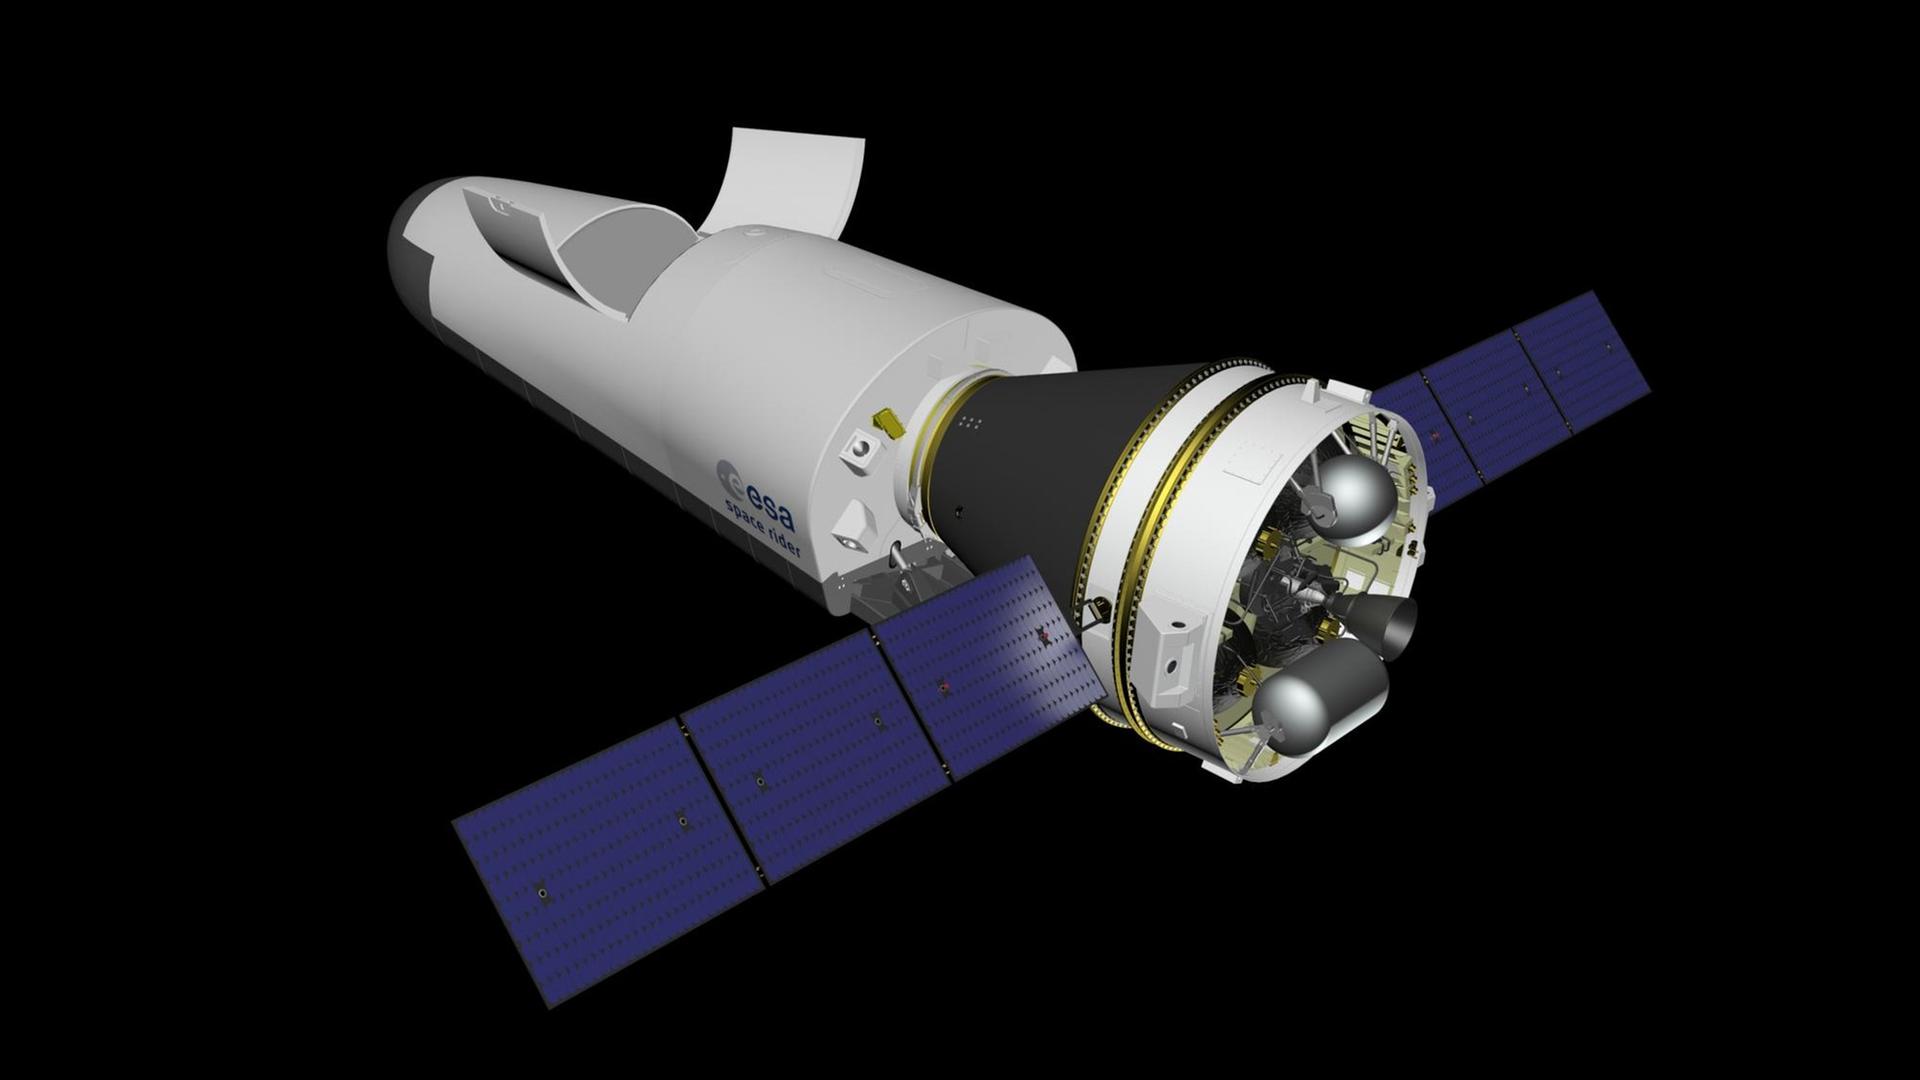 Der Space Rider der Europäischen Raumfahrtagentur ESA soll als wiederverwendbare, unbemannte Raumfähre für Forschungszwecken im Erdorbit eingesetzt werden.